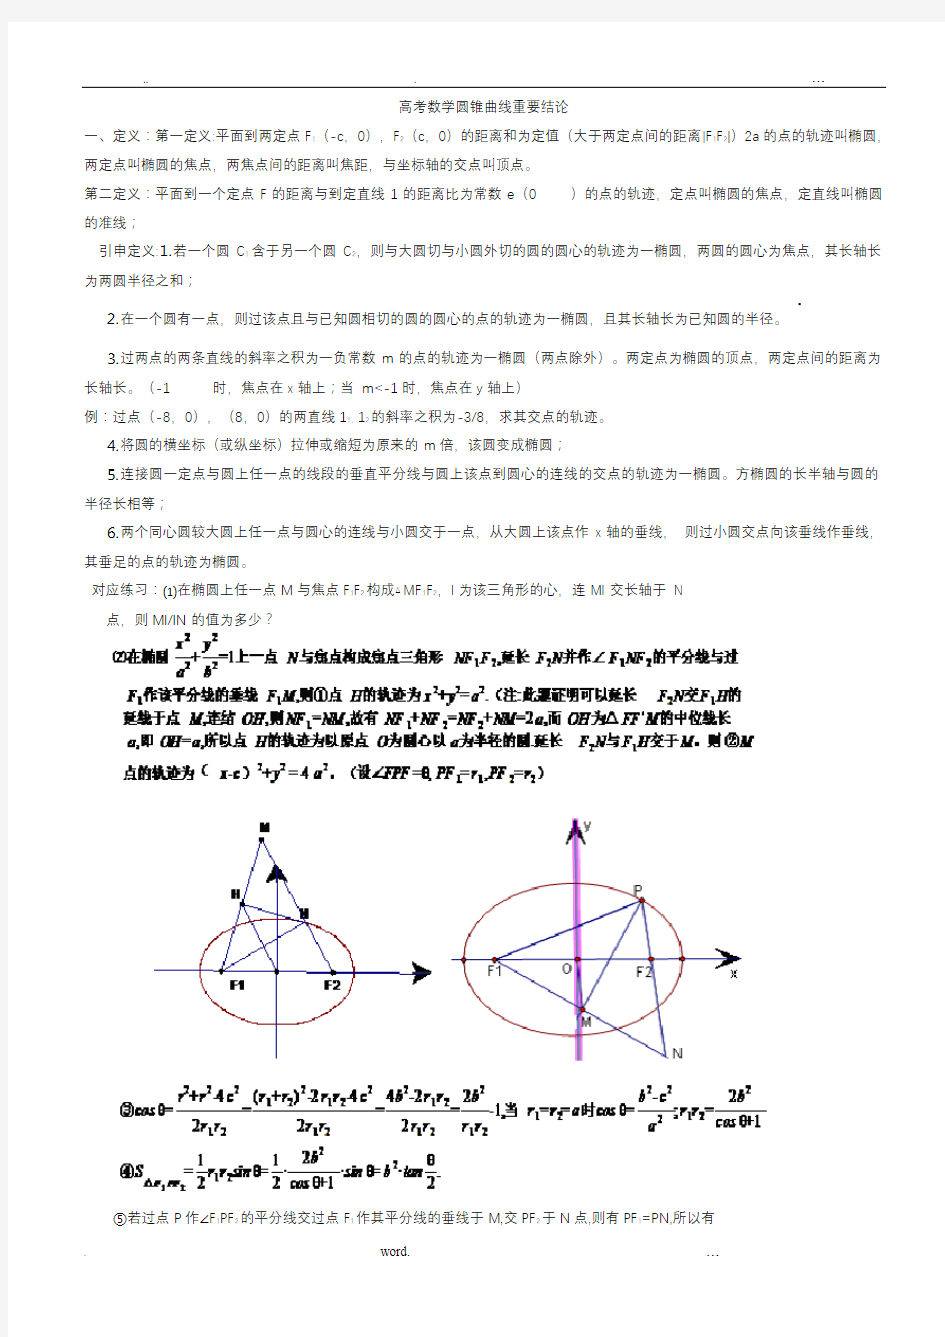 高考数学中圆锥曲线重要结论的最全总结